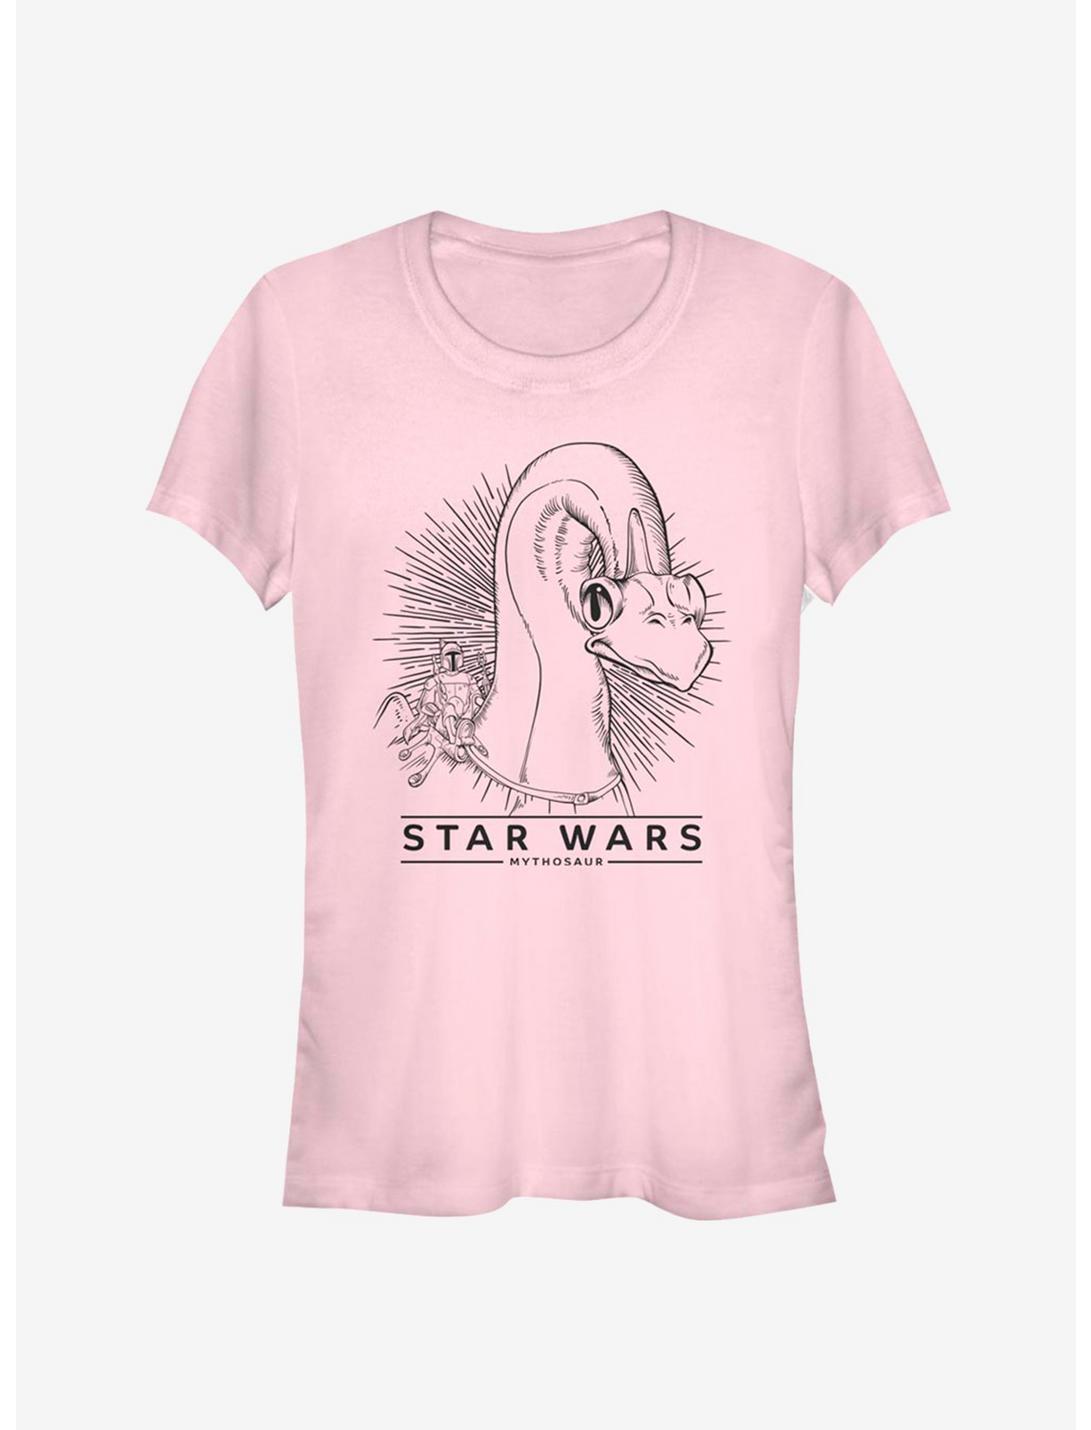 Star Wars Mythasour Boba Rider  Girls T-Shirt, LIGHT PINK, hi-res